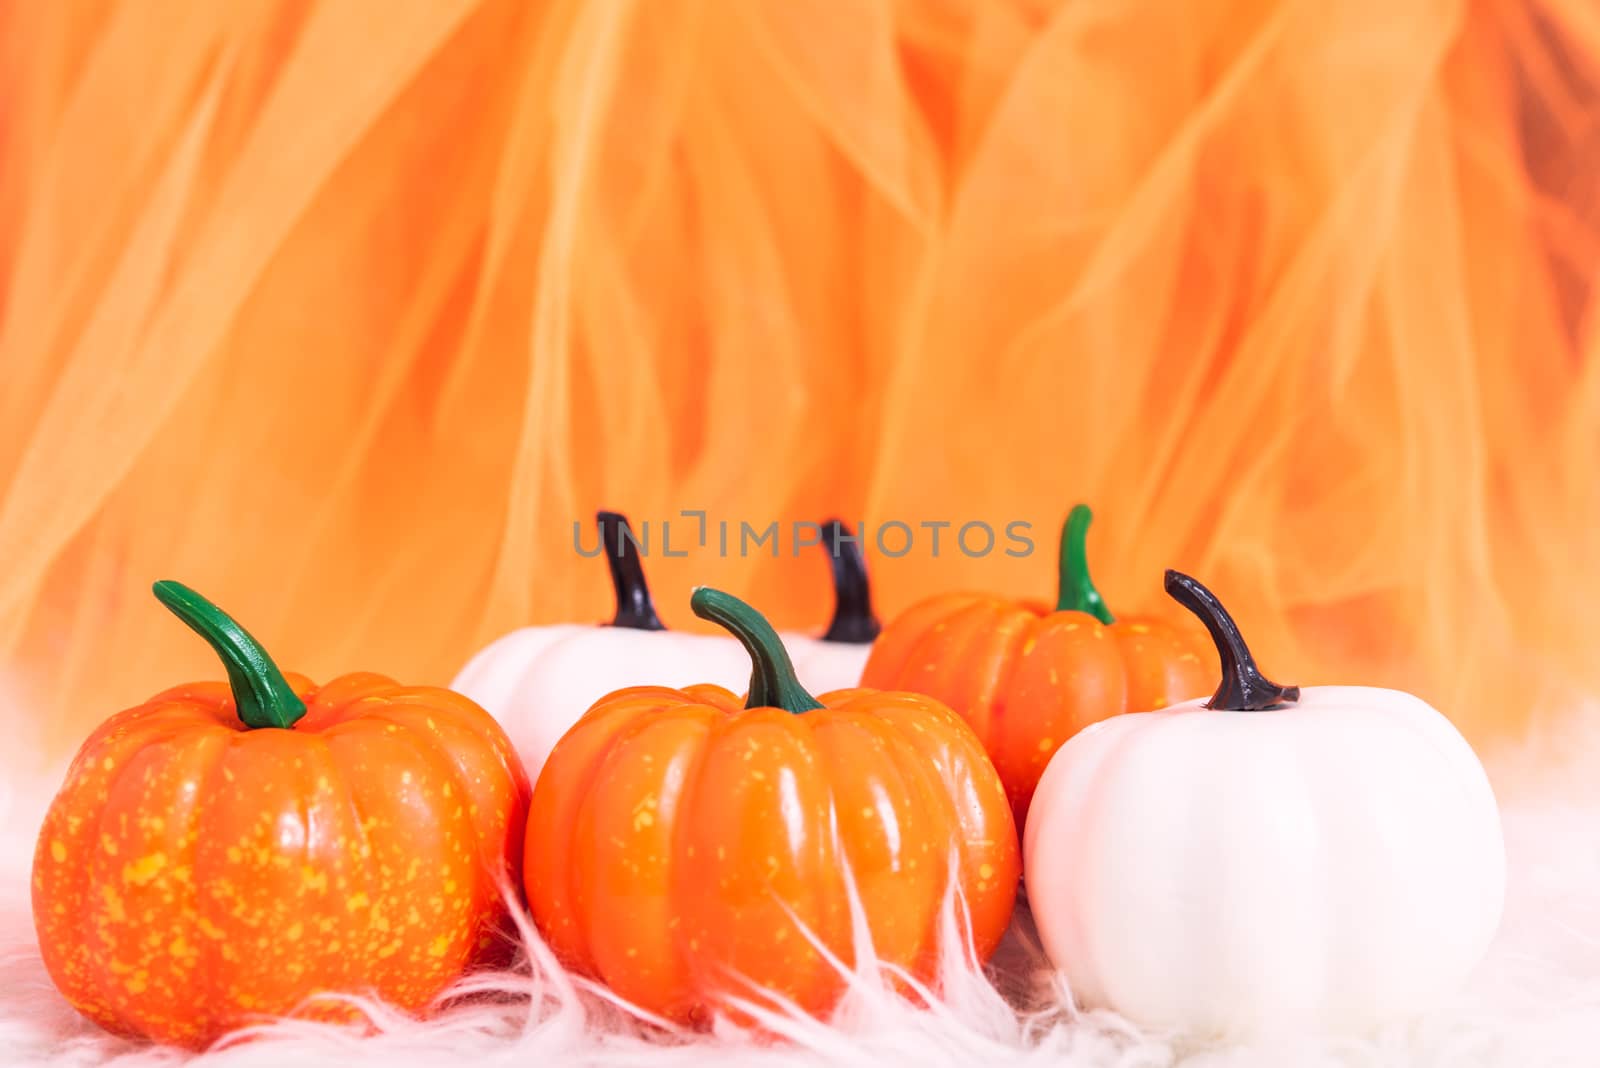 White and orange pumpkin in Halloween day concept on orange background